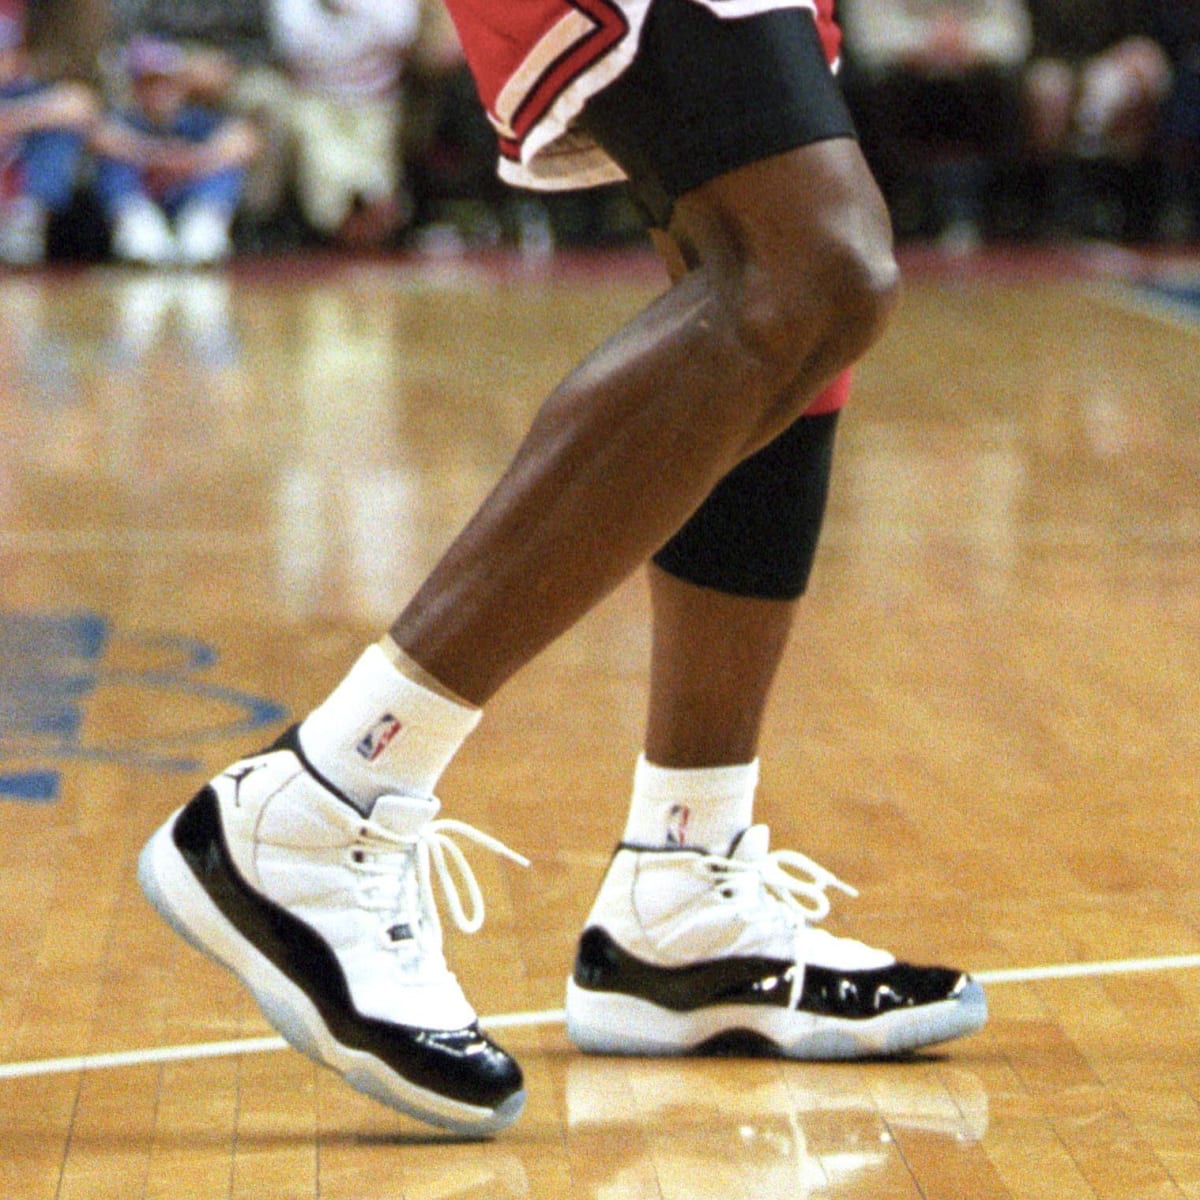 Air Jordan 11